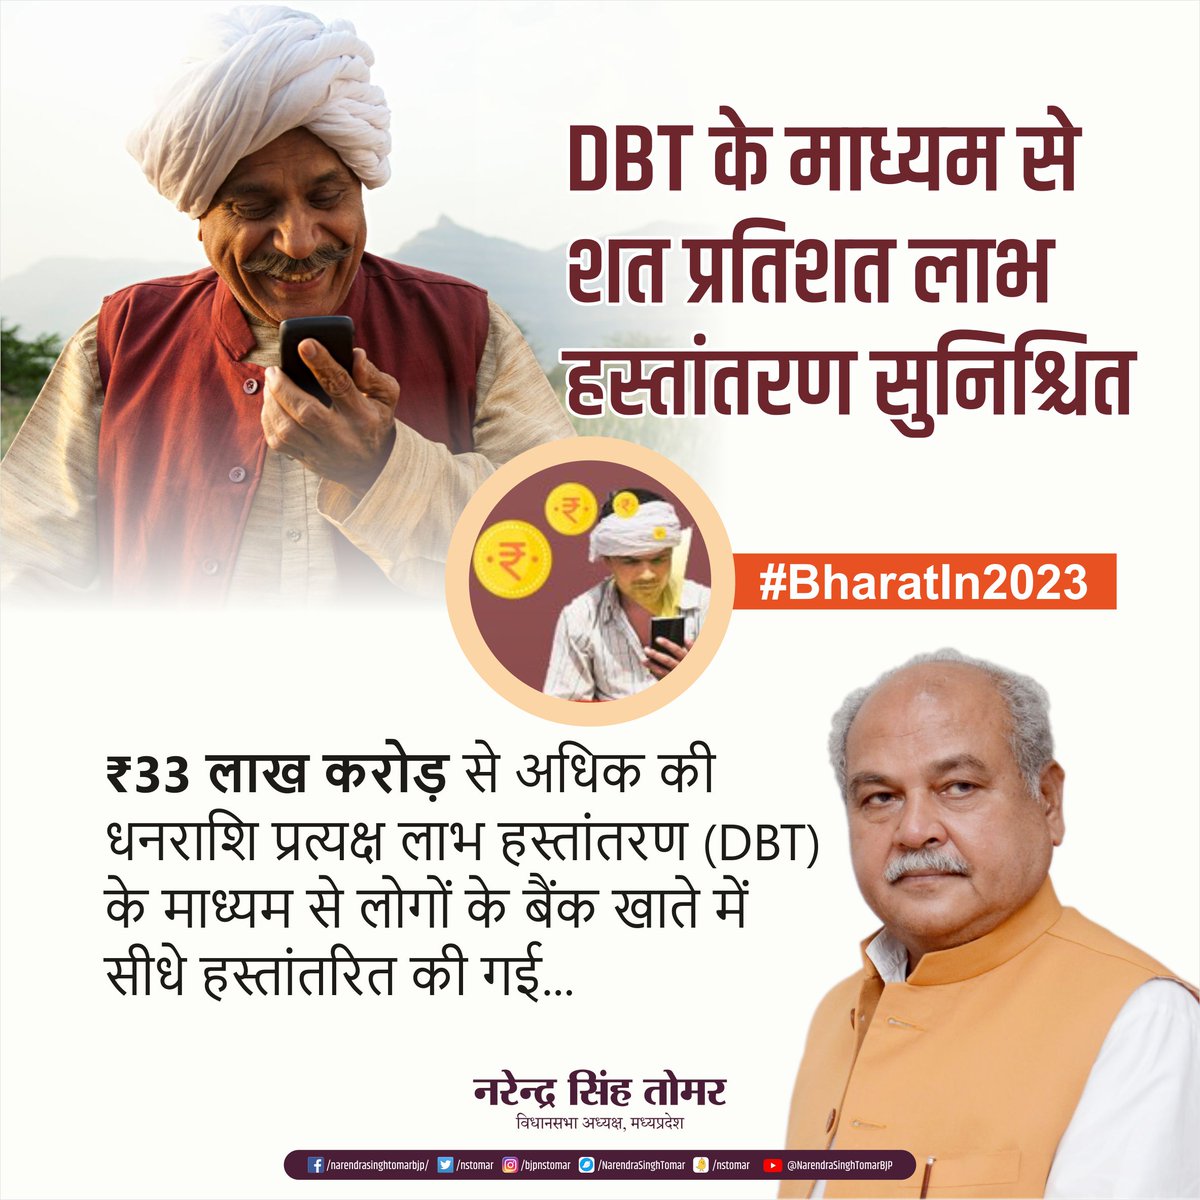 DBT के माध्यम से शत प्रतिशत लाभ हस्तांतरण सुनिश्चित ! 33 लाख करोड़ रुपये से अधिक की धनराशि प्रत्यक्ष लाभ हस्तांतरण (DBT) के माध्यम से लोगों के बैंक खाते में सीधे हस्तांतरित की गई। #BharatIn2023